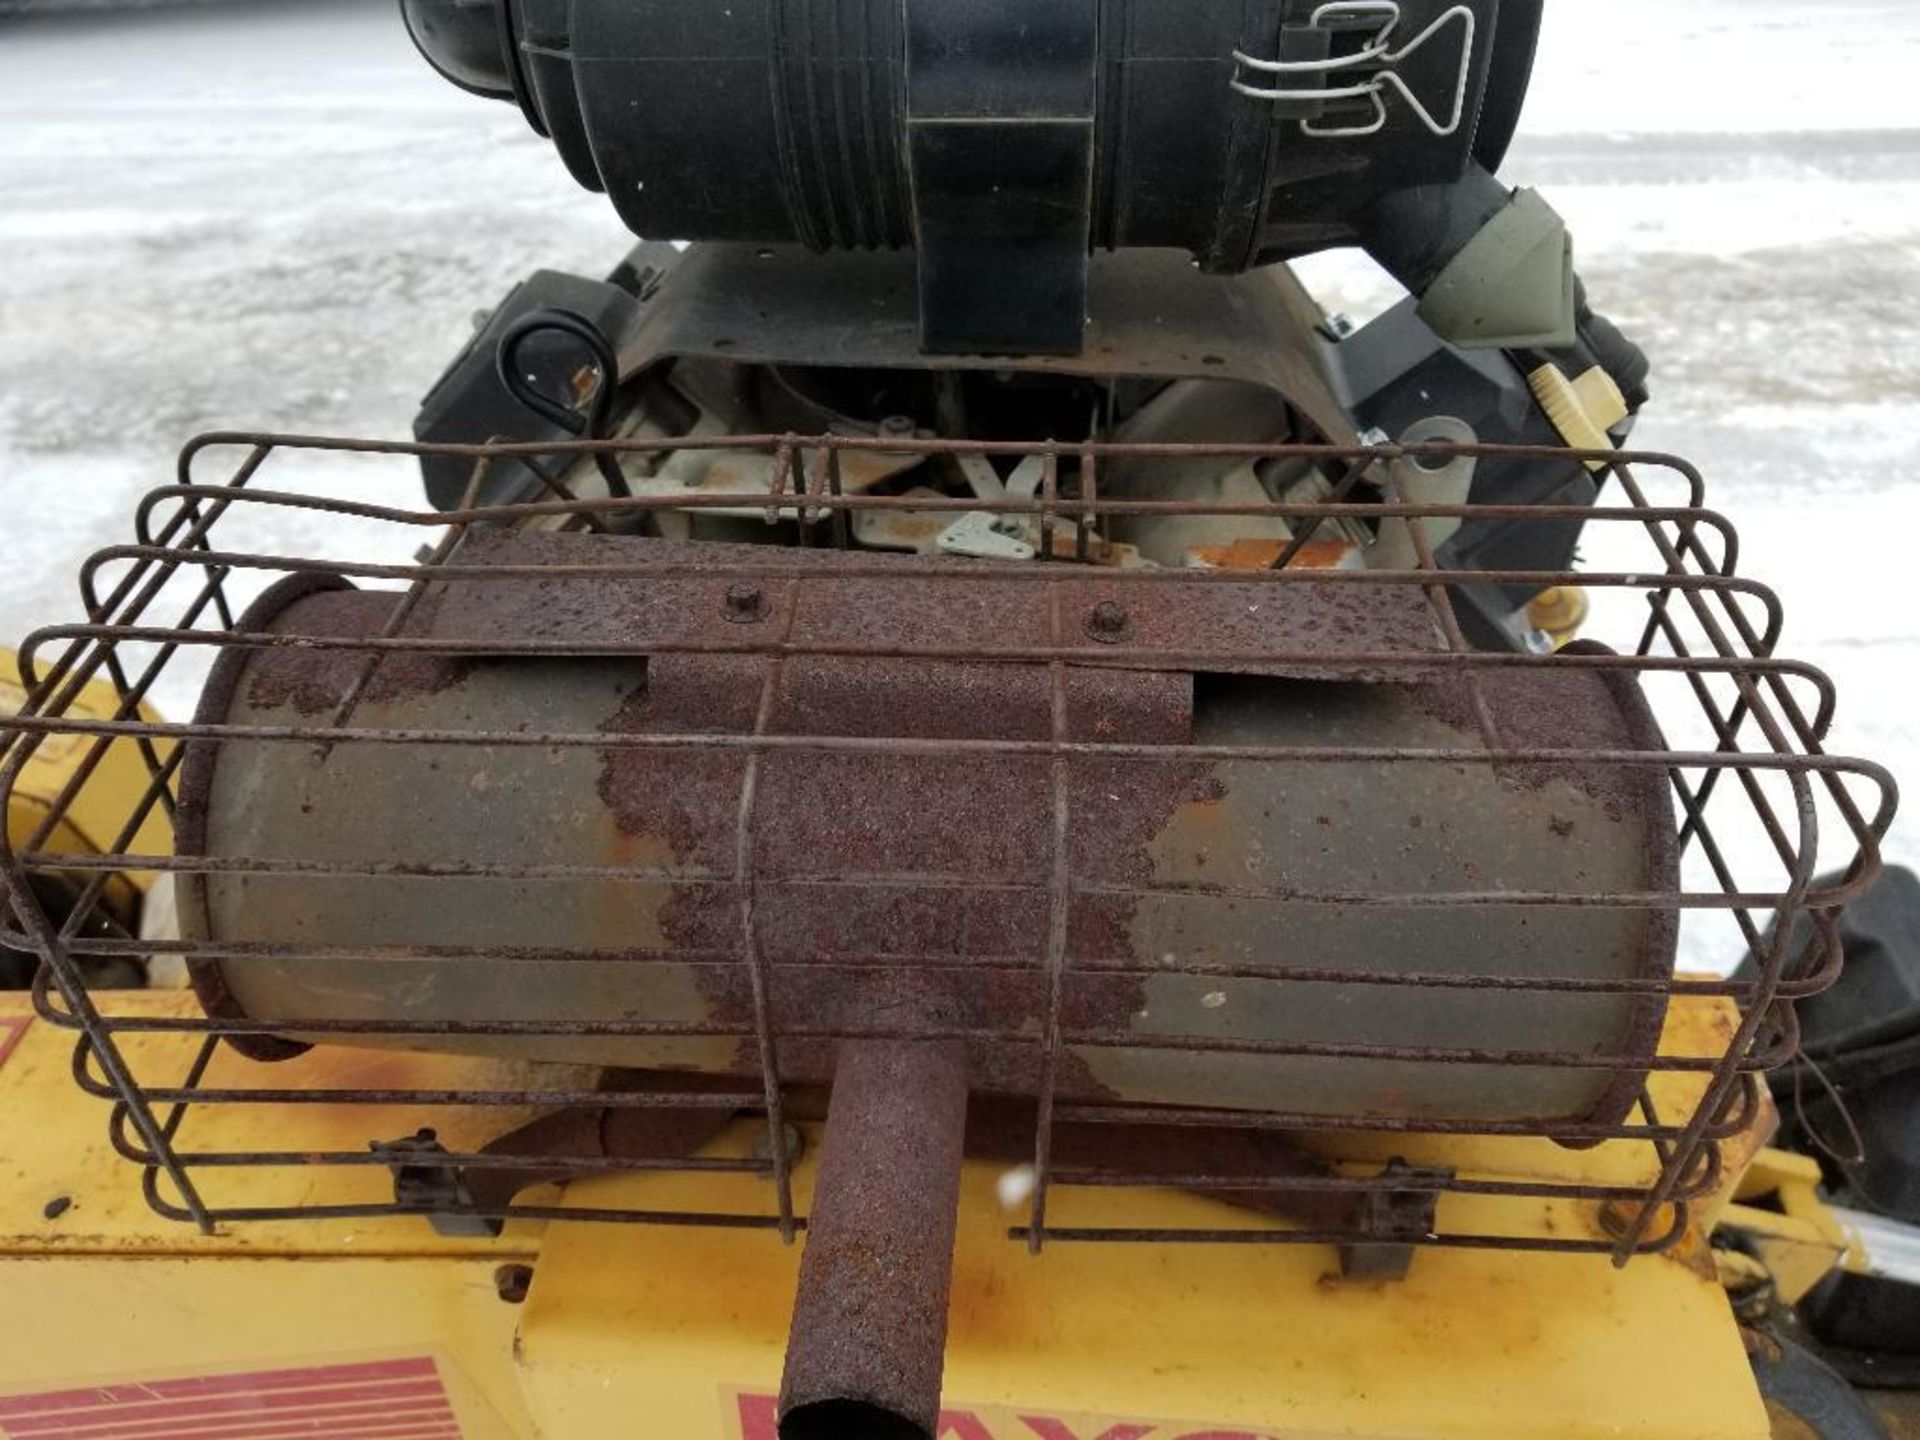 Rayco stump grinder. RG1625 super Jr. Kohler motor. 1320 hours showing on hour meter. - Image 9 of 19